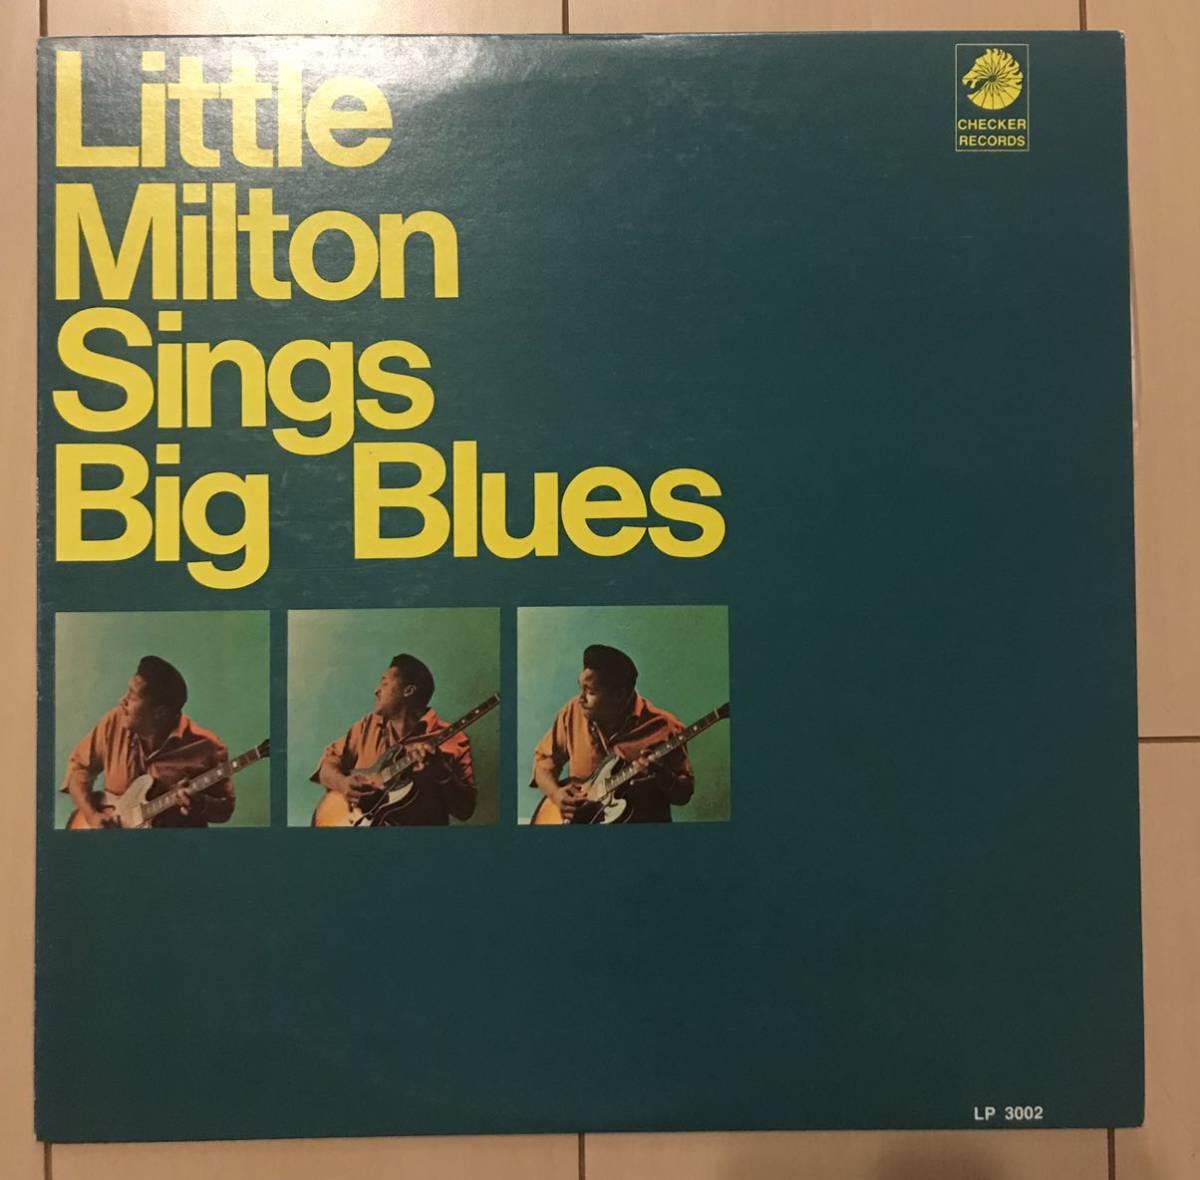 ■LITTLE MILTON■リトルミルトン■Sings Big Blues / 1LP / Checker Records / 歴史的名盤 / レコード / アナログ盤 / ヴィンテージLP /_画像1